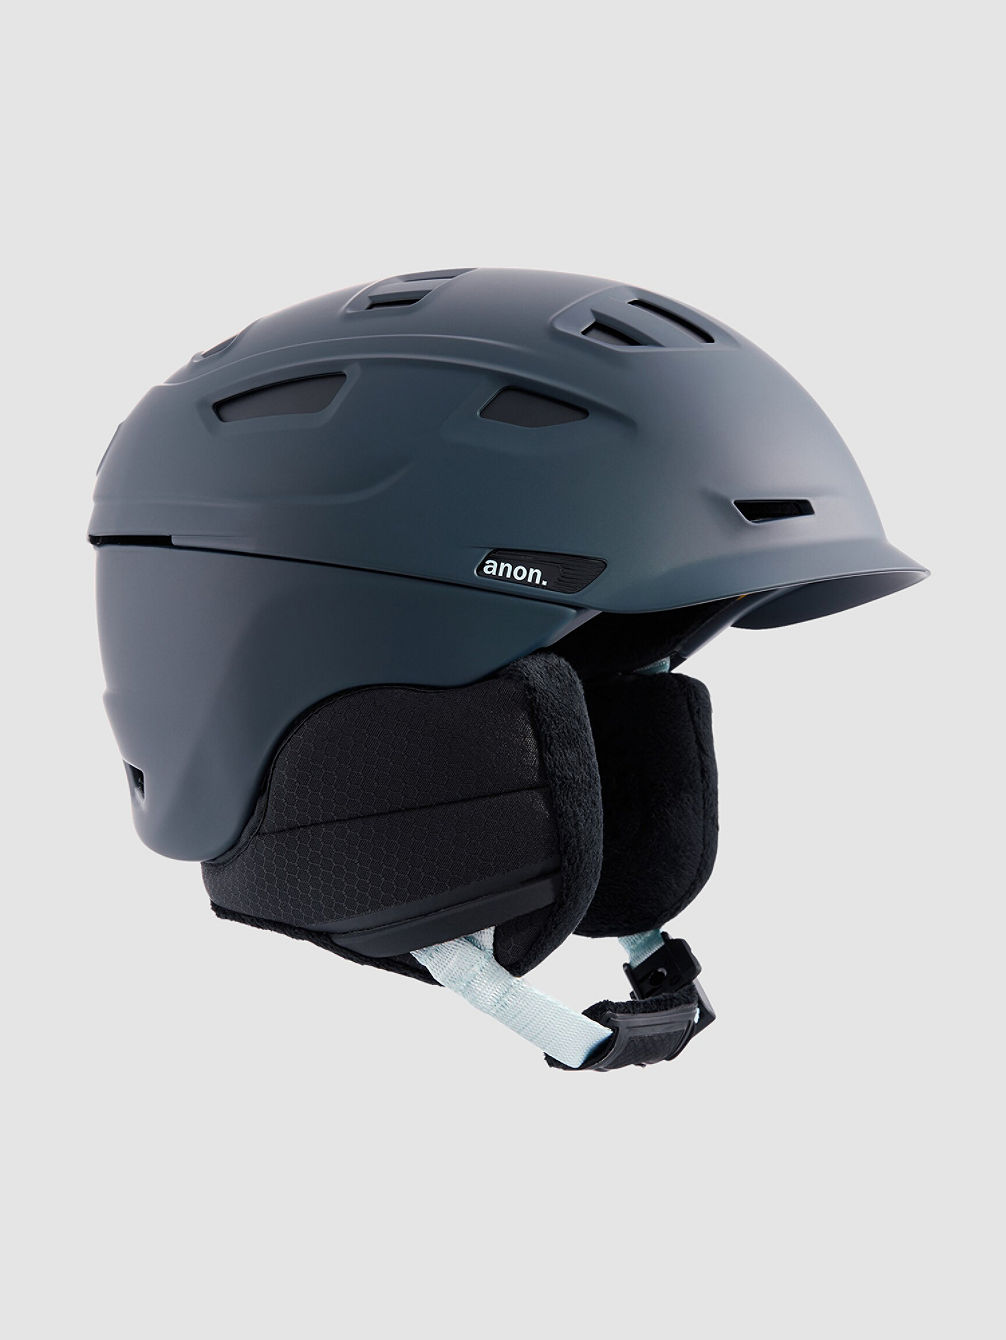 Nova MIPS Helmet